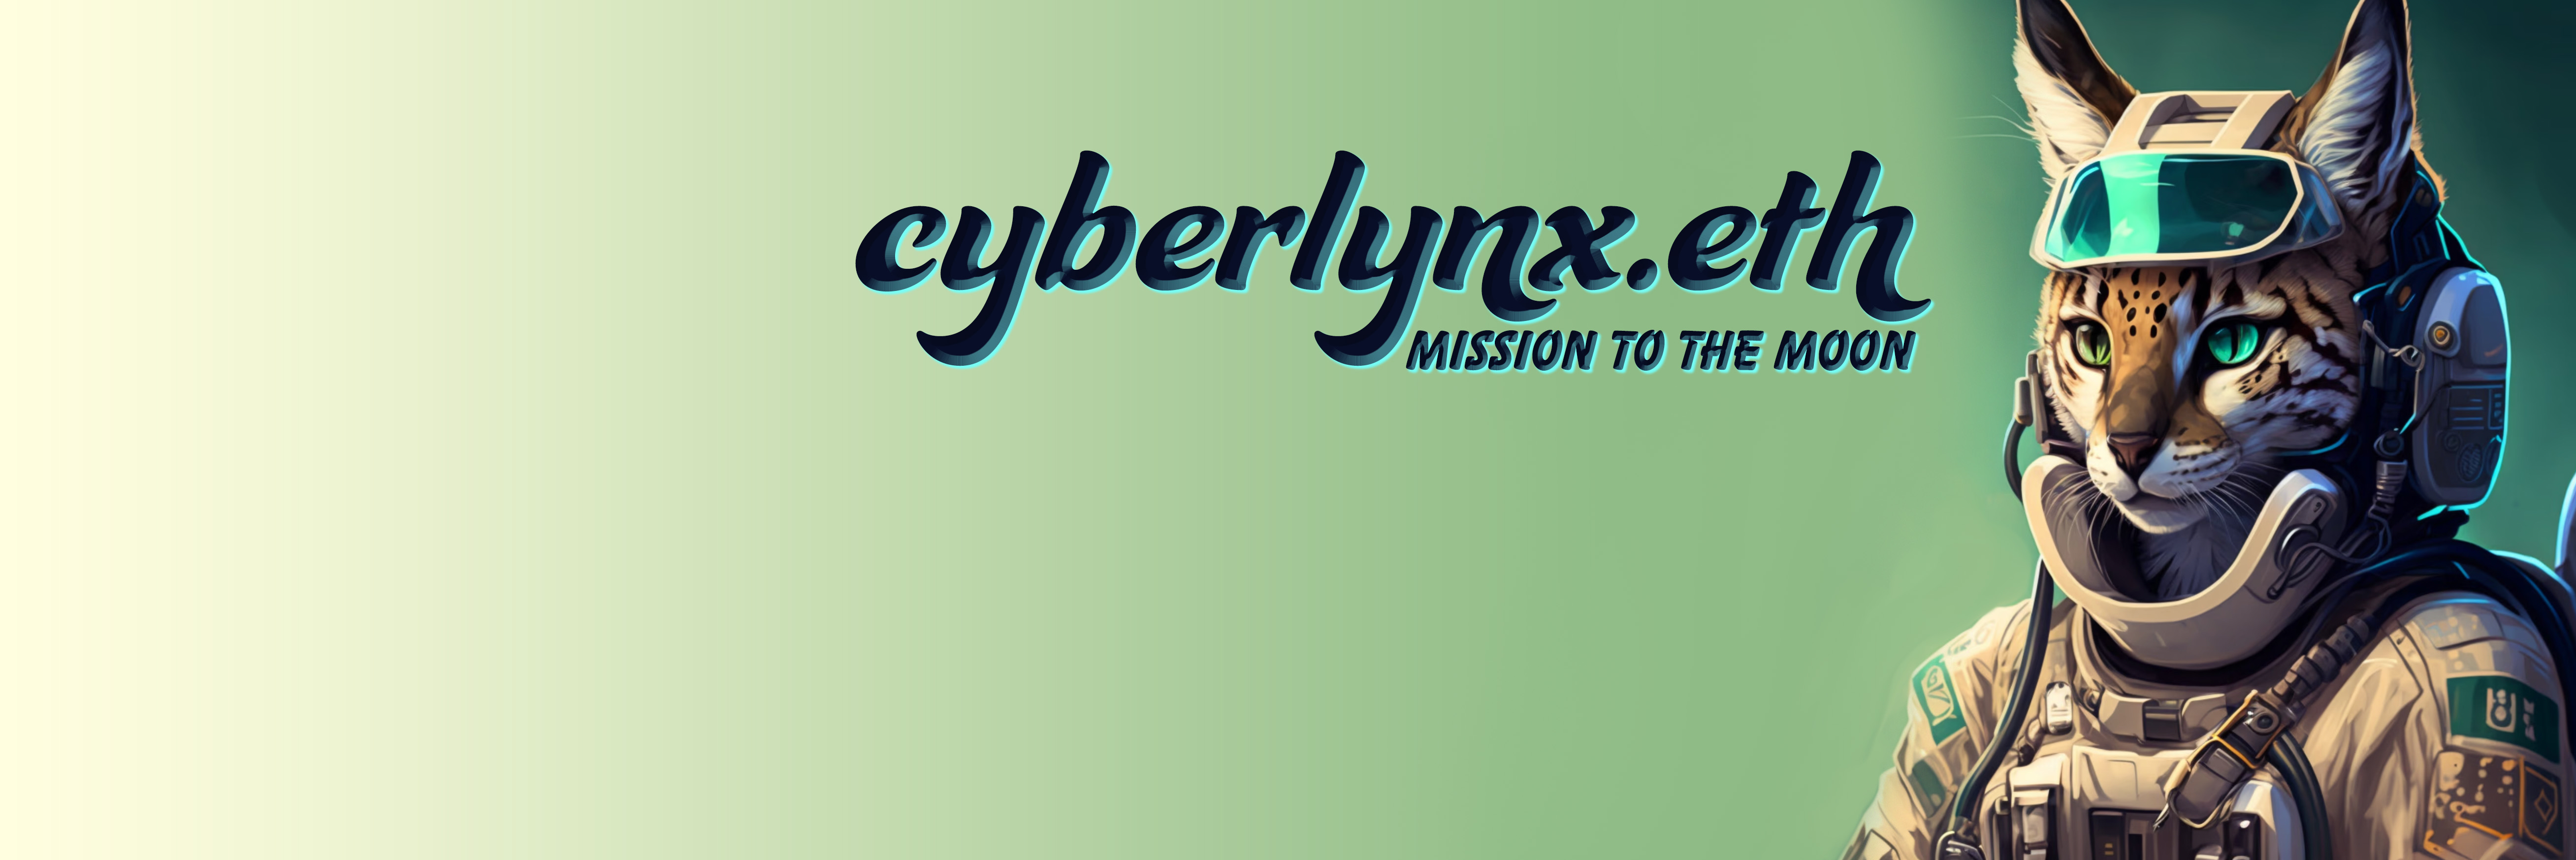 cyberlynx.eth banner